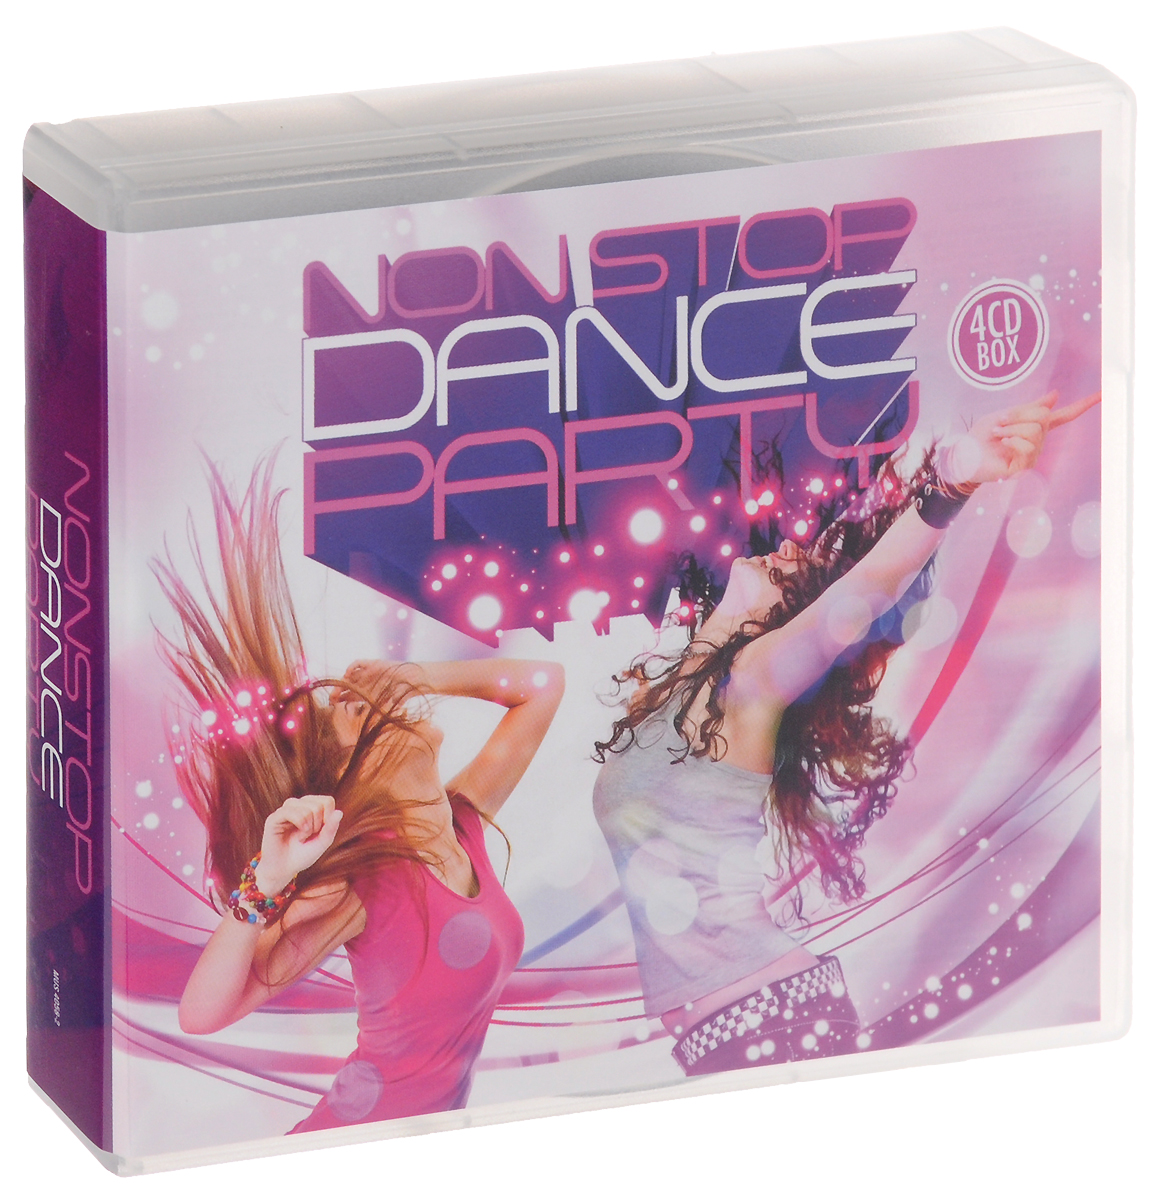 Nonstop Dance Party (4 CD)